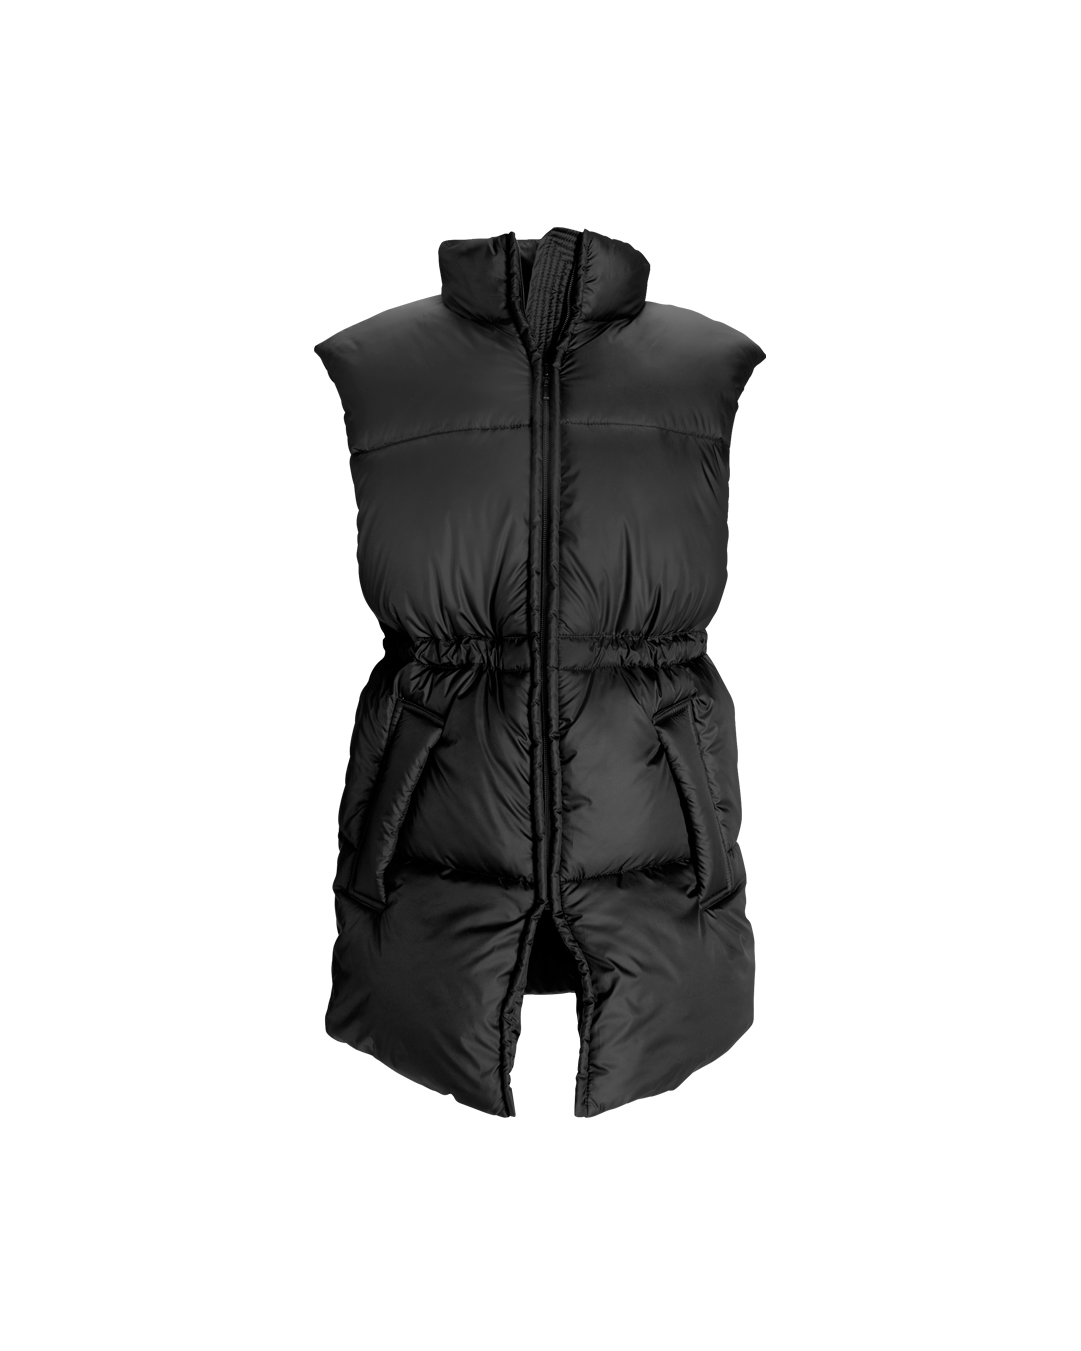 vest 3.0 in black color